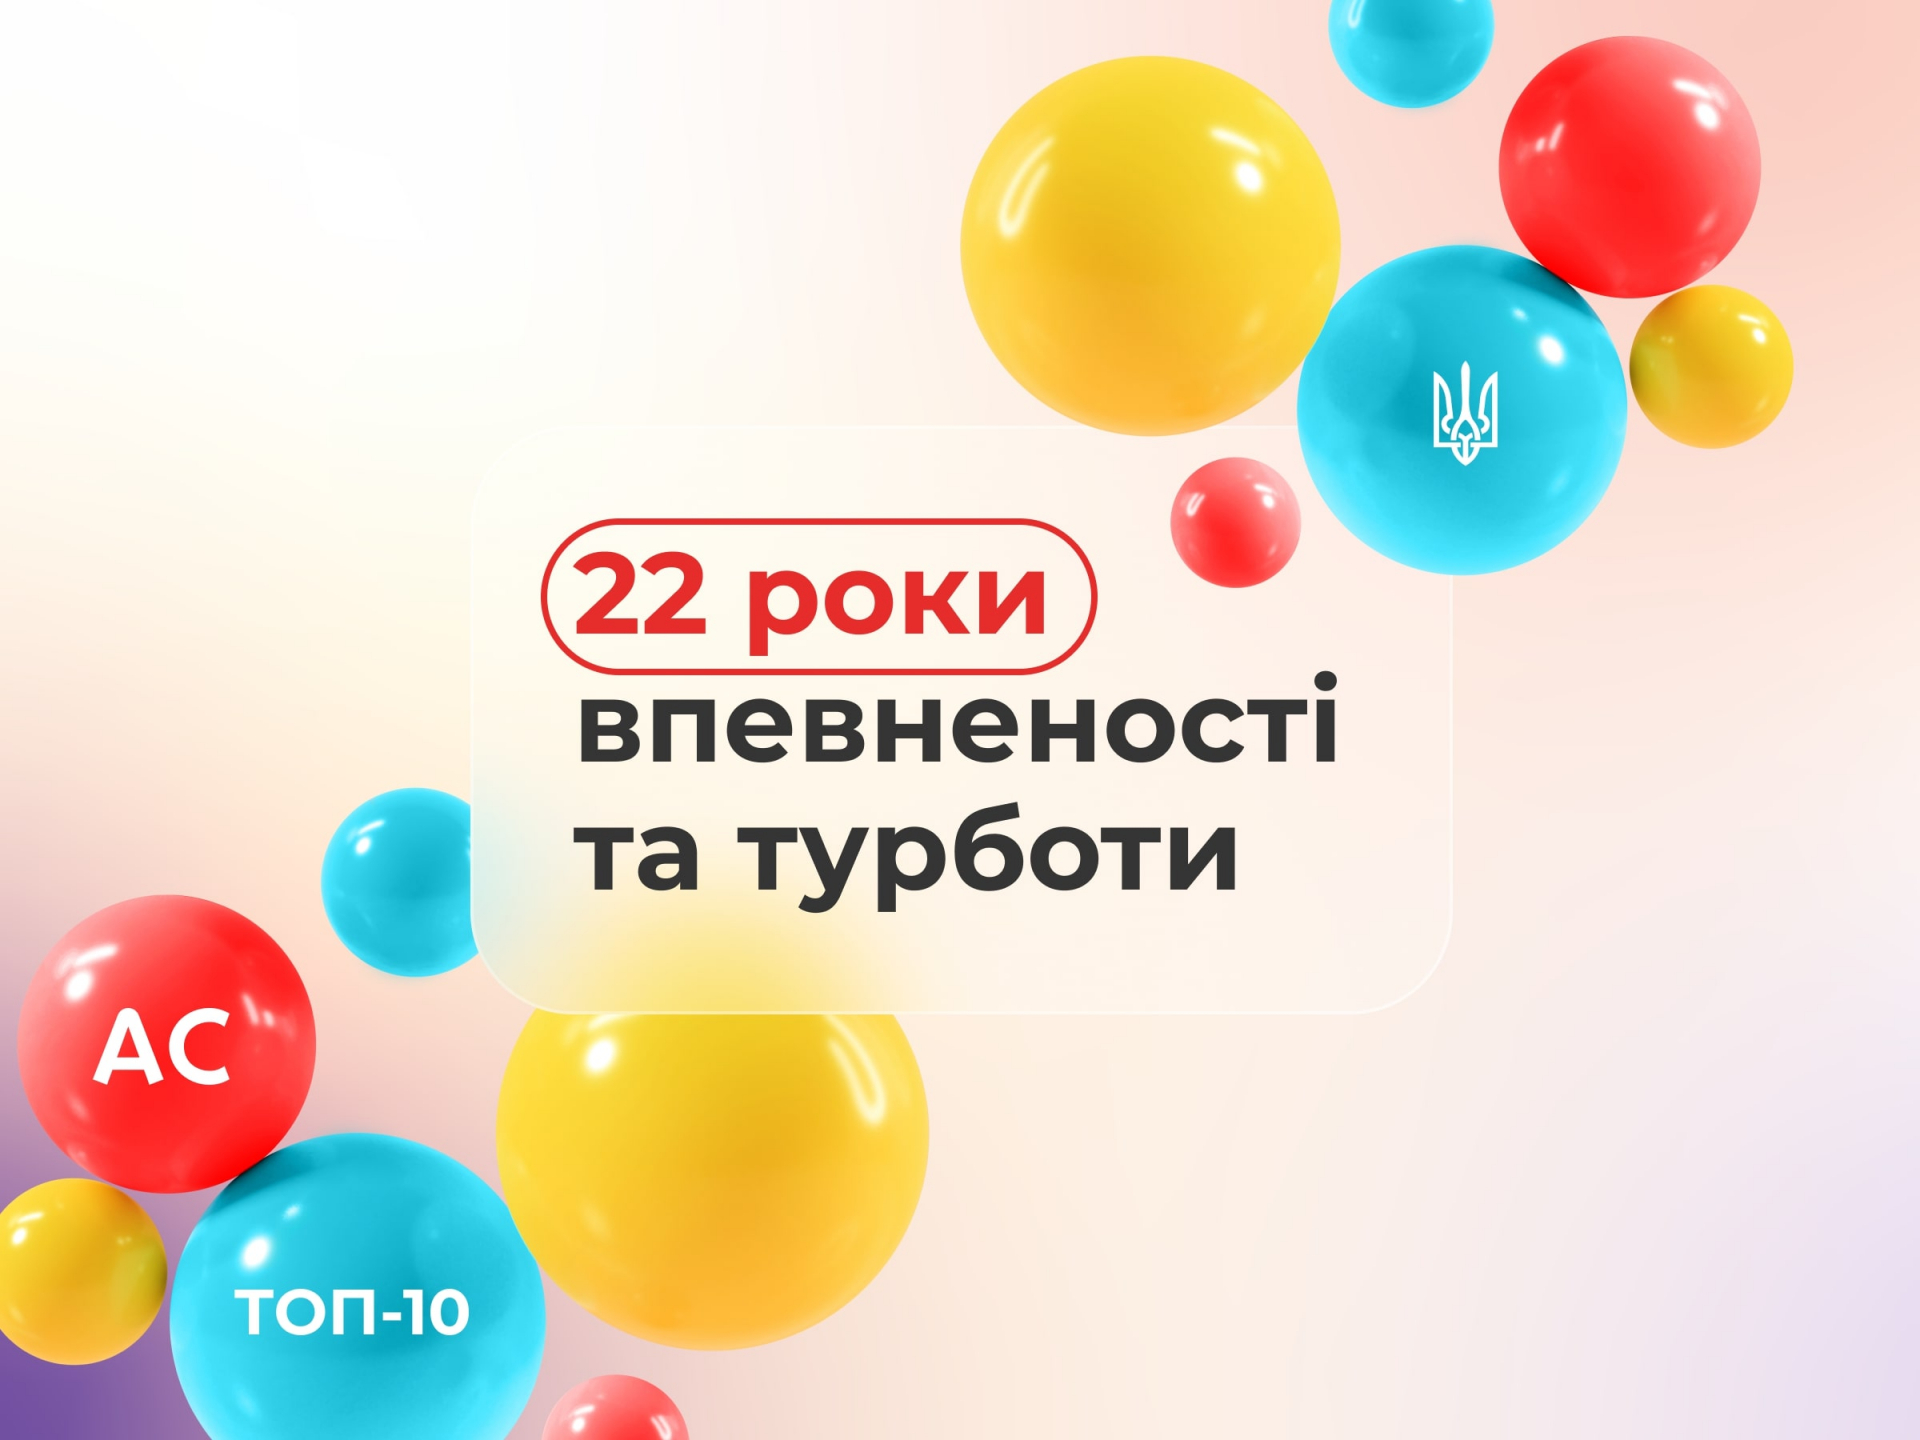 7 июня Альфа Страхование отмечает свой 22 год плодотворного труда на страховом рынке Украины.